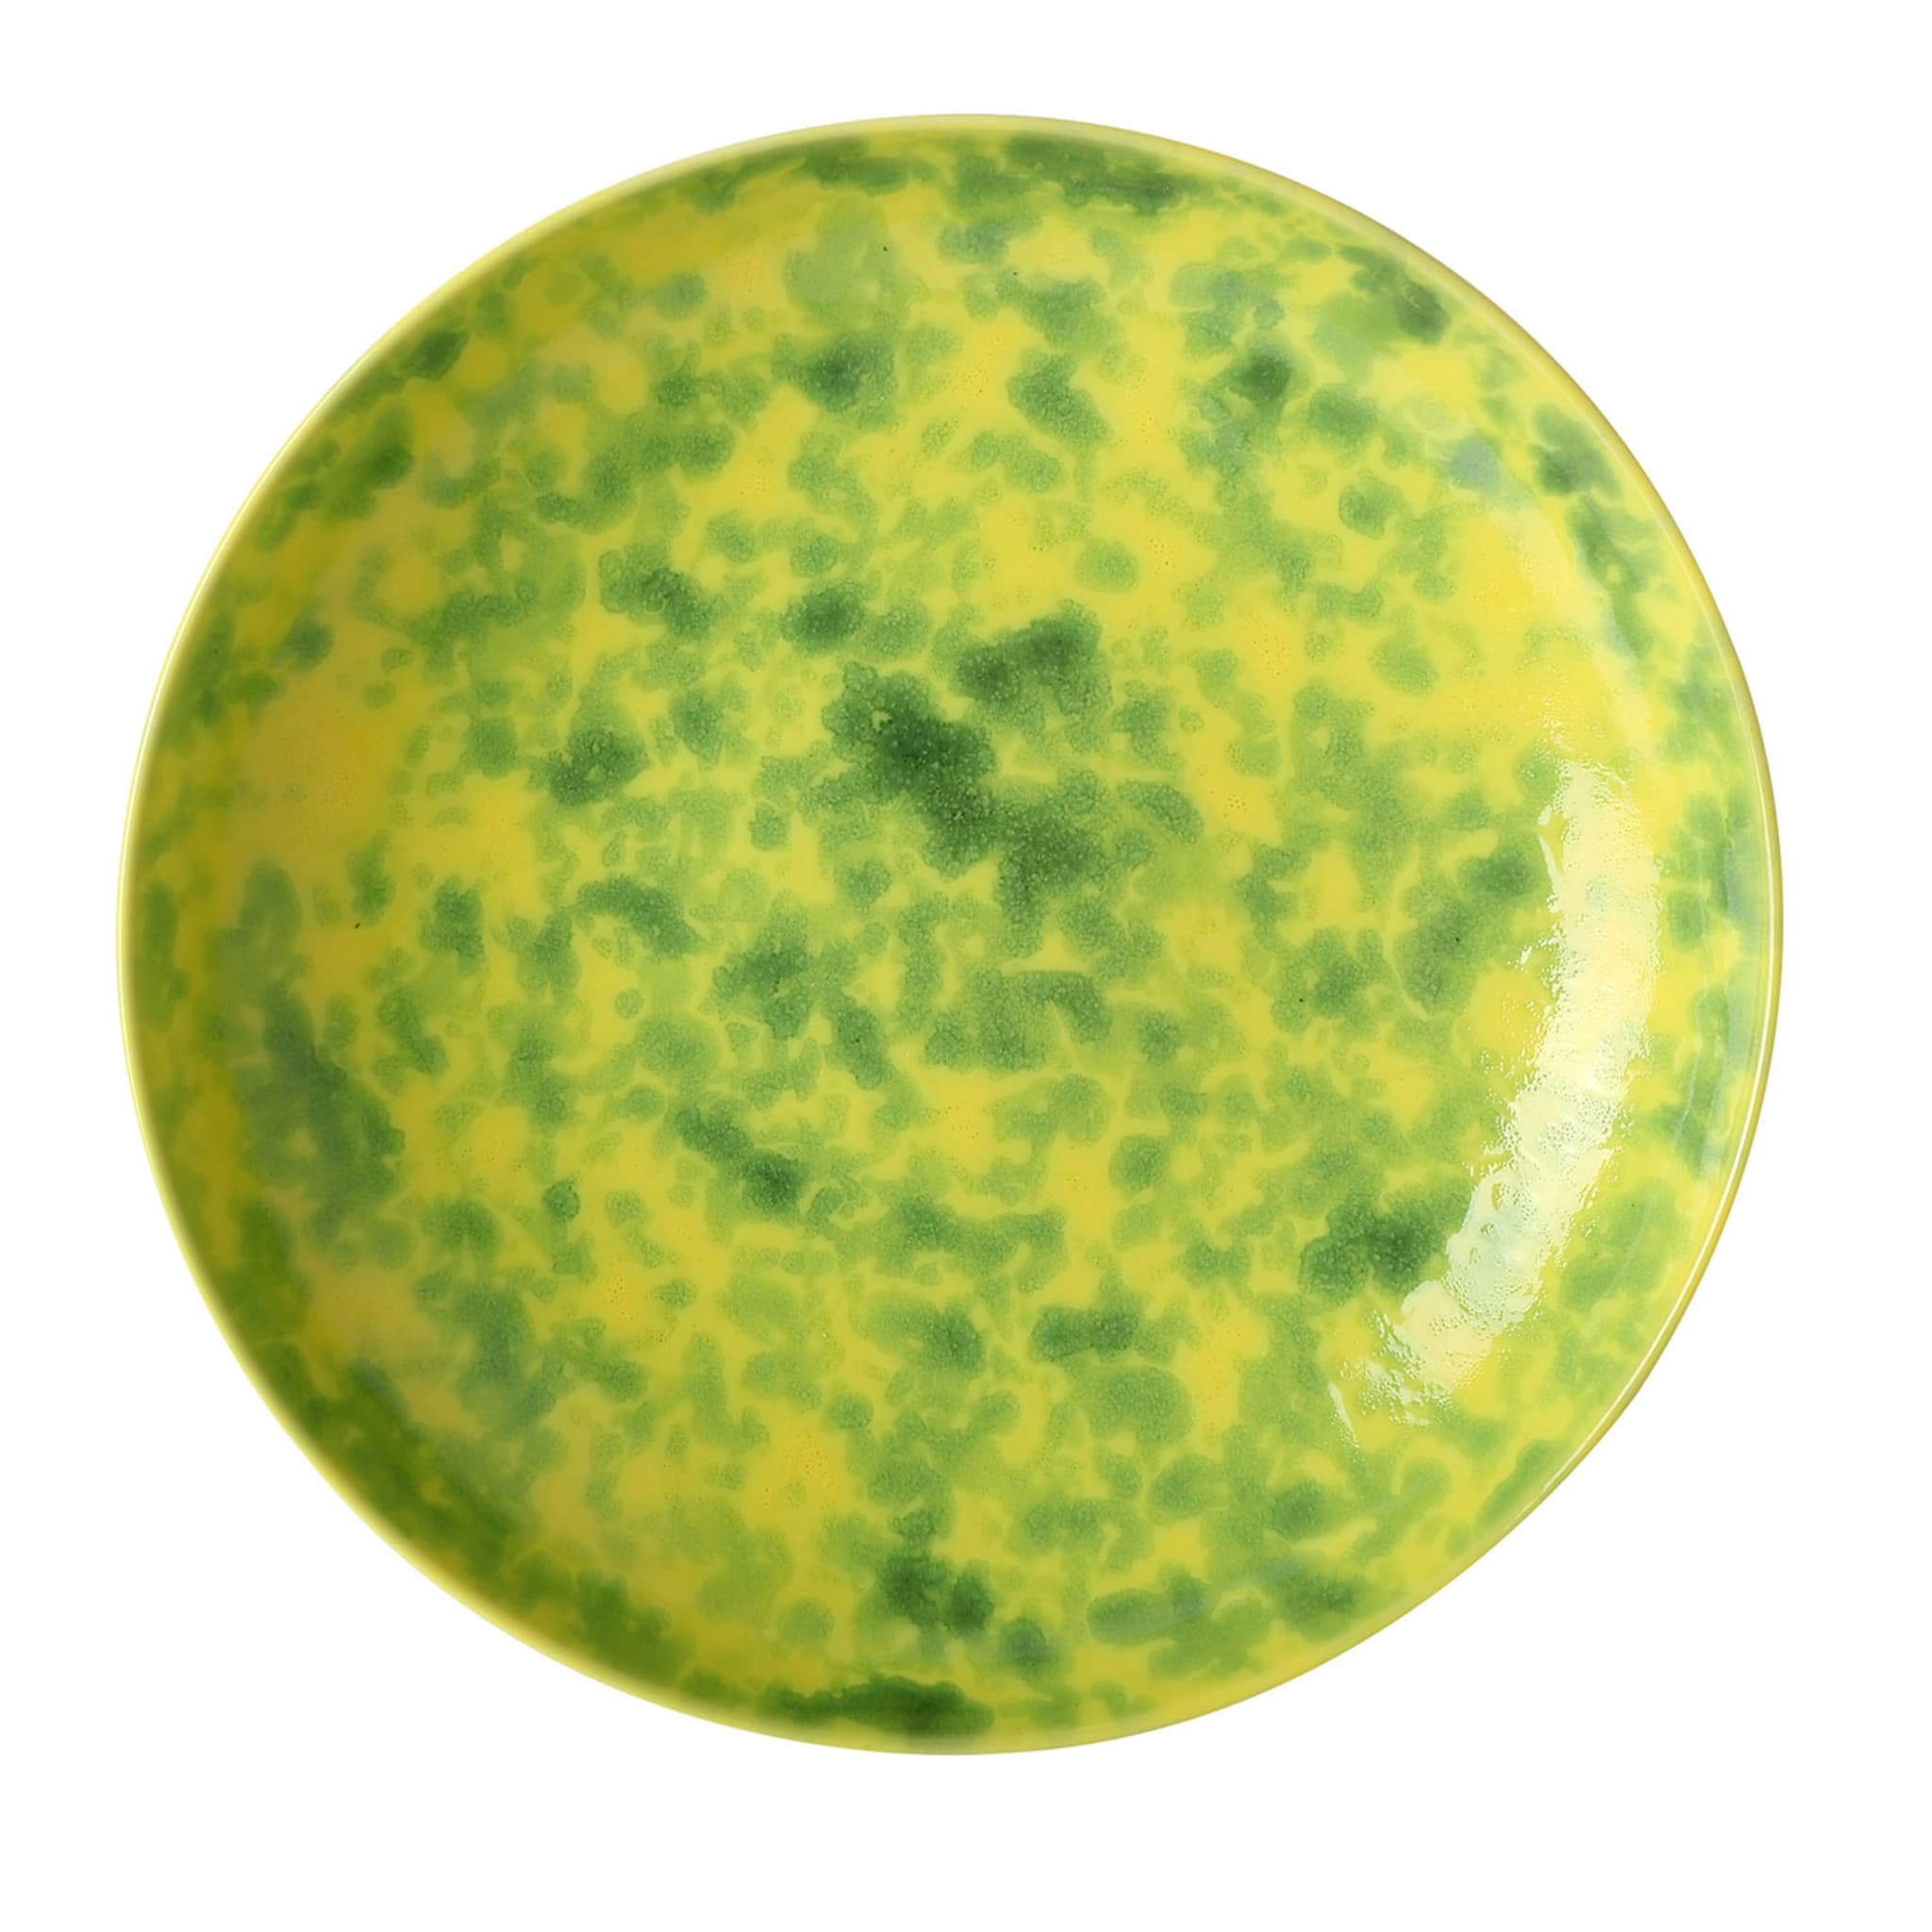 Limoni Runder grün-melierter gelber Obstteller - Hauptansicht